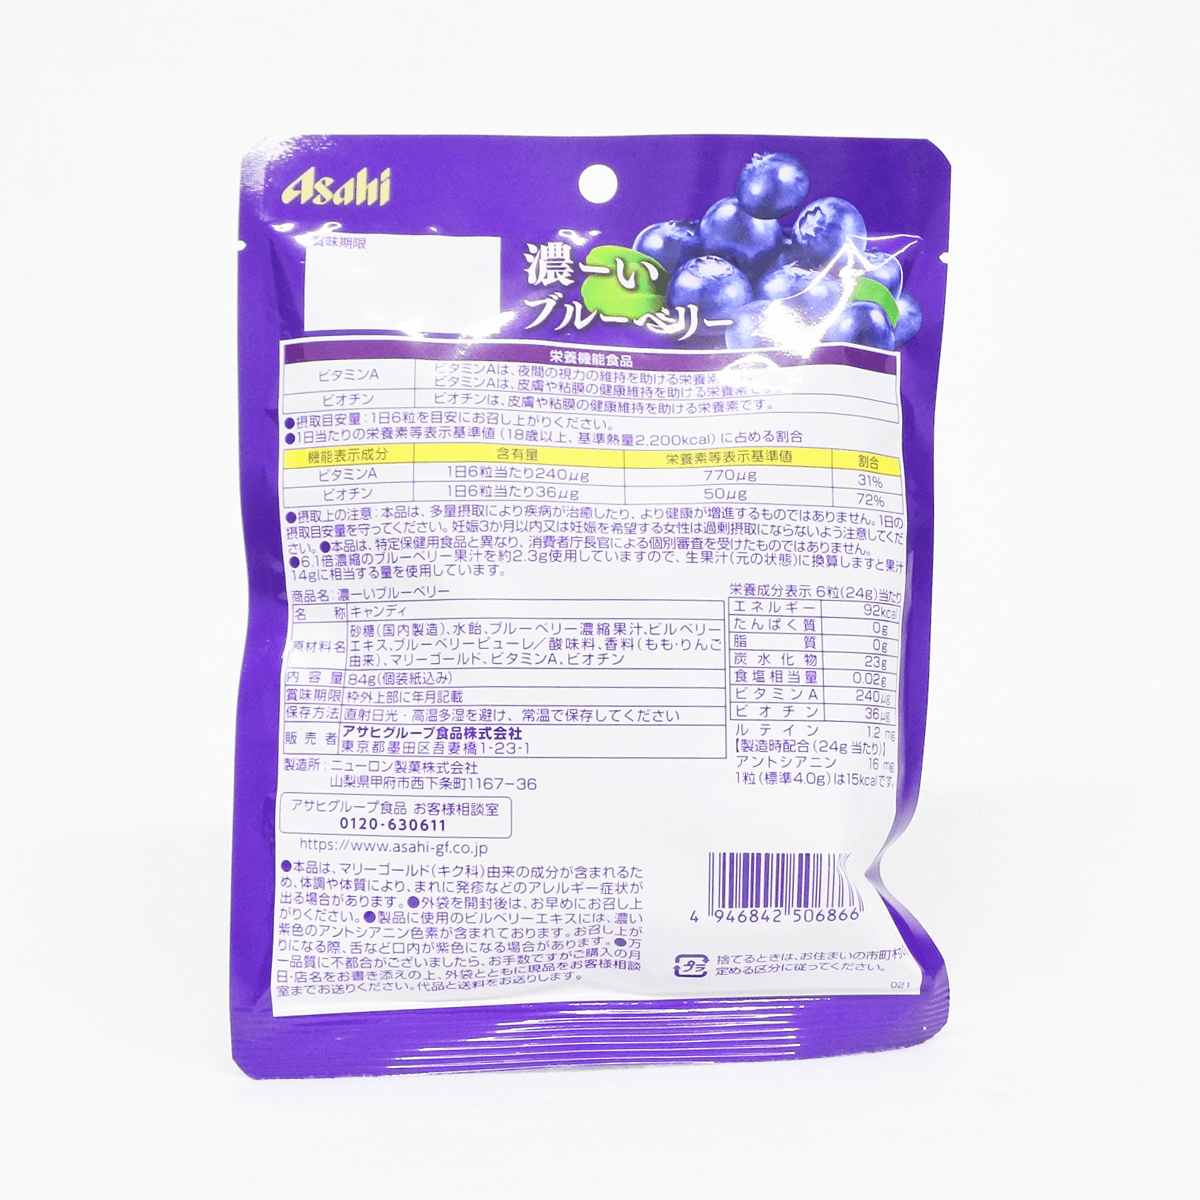 Asahi 朝日 超浓蓝莓添加叶黄素糖果 84g